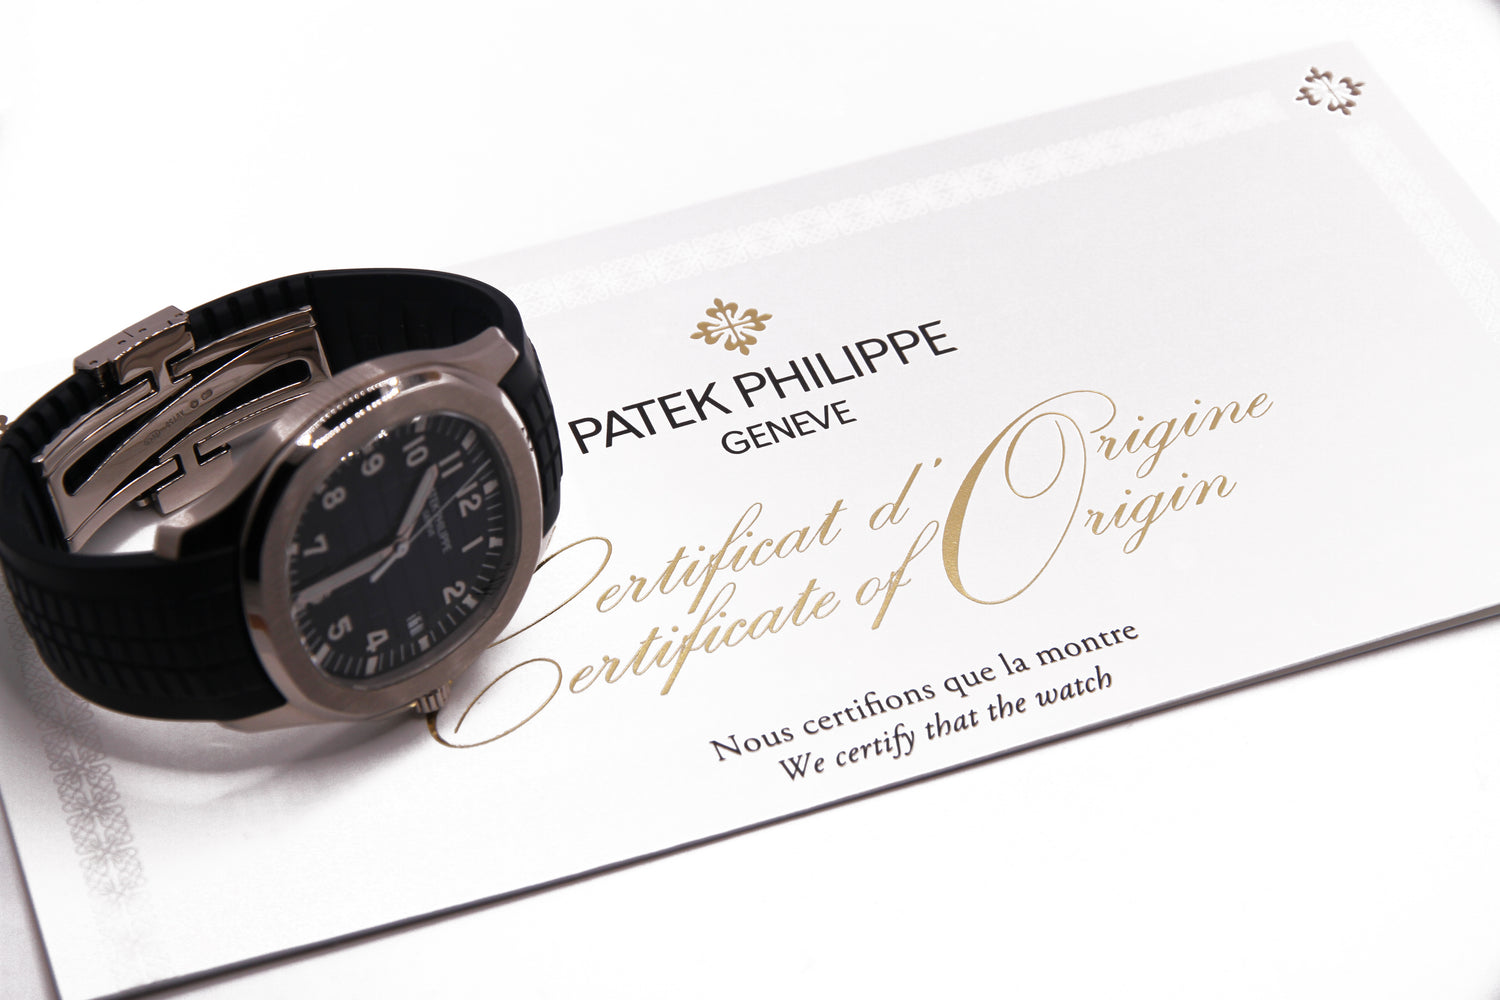 パテックフィリップ アクアノート 誕生20周年記念モデル 青 / PATEK PHILIPPE AQUANAUT Ref.5168G-001 Cal.324SC